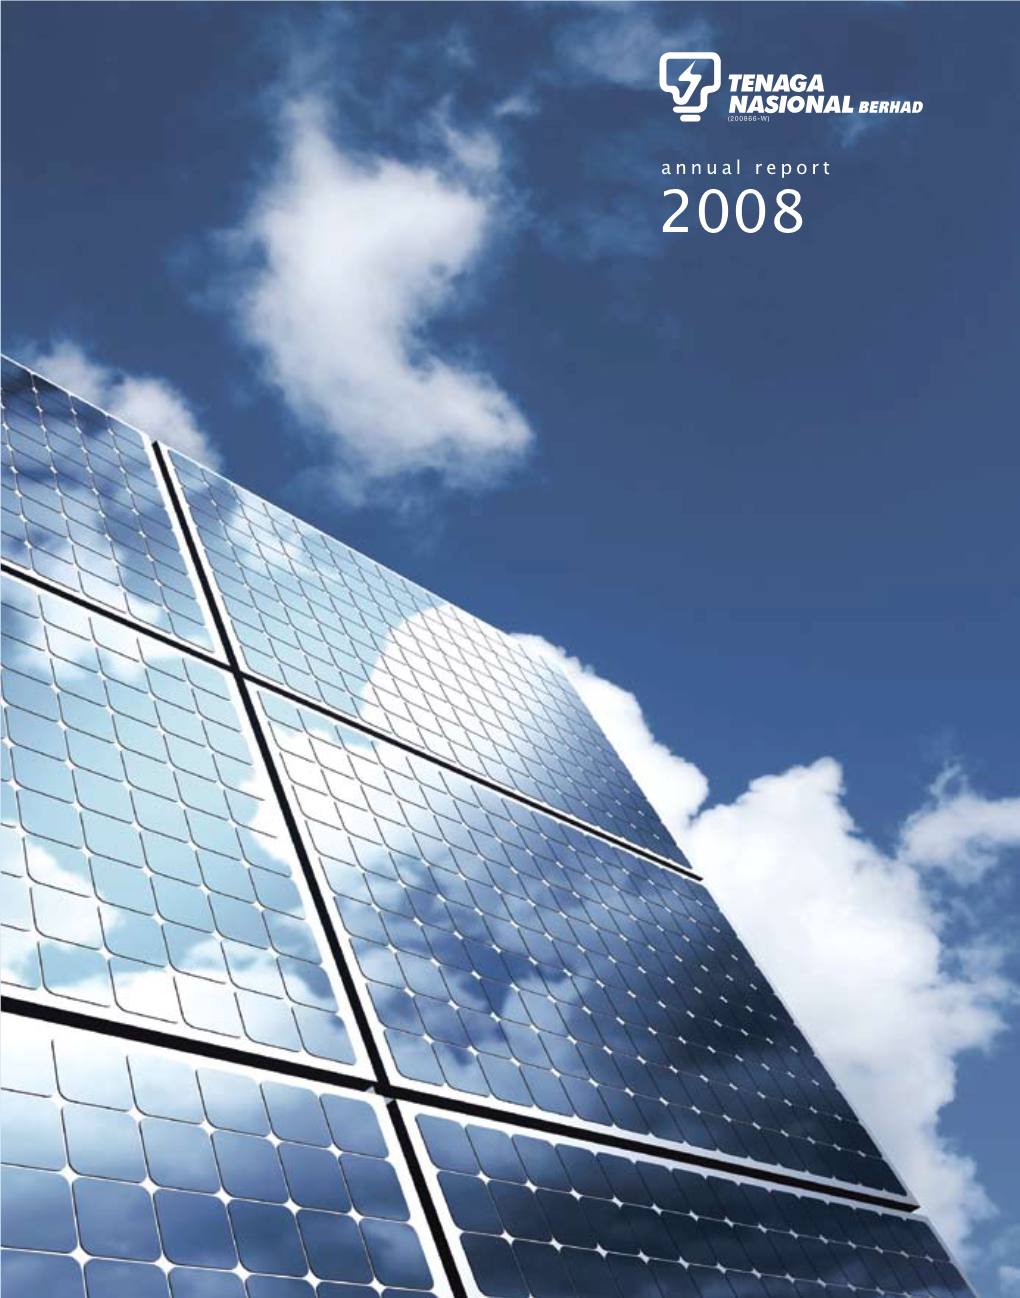 Annual Report 2008 Annual Report 2008 TENAGA NASIONAL BERHAD (200866-W)